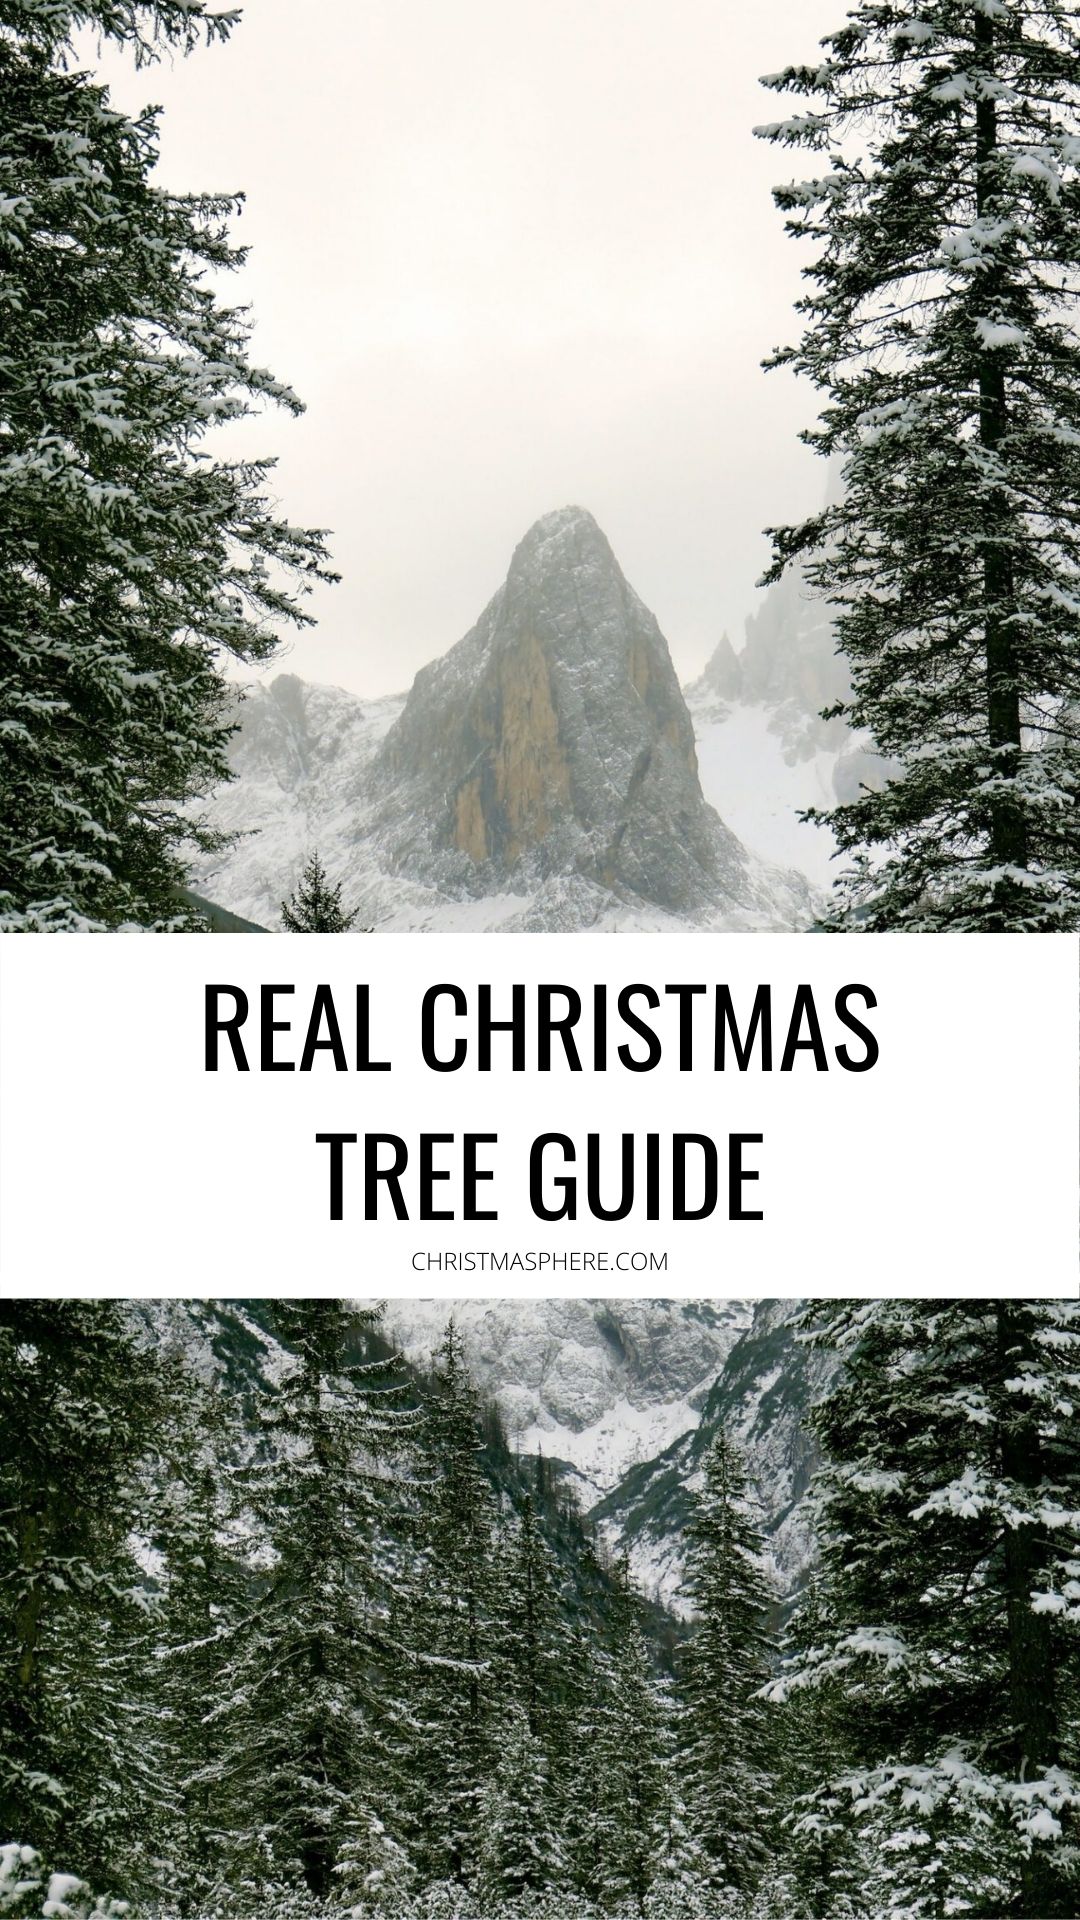 Real Christmas Tree Guide